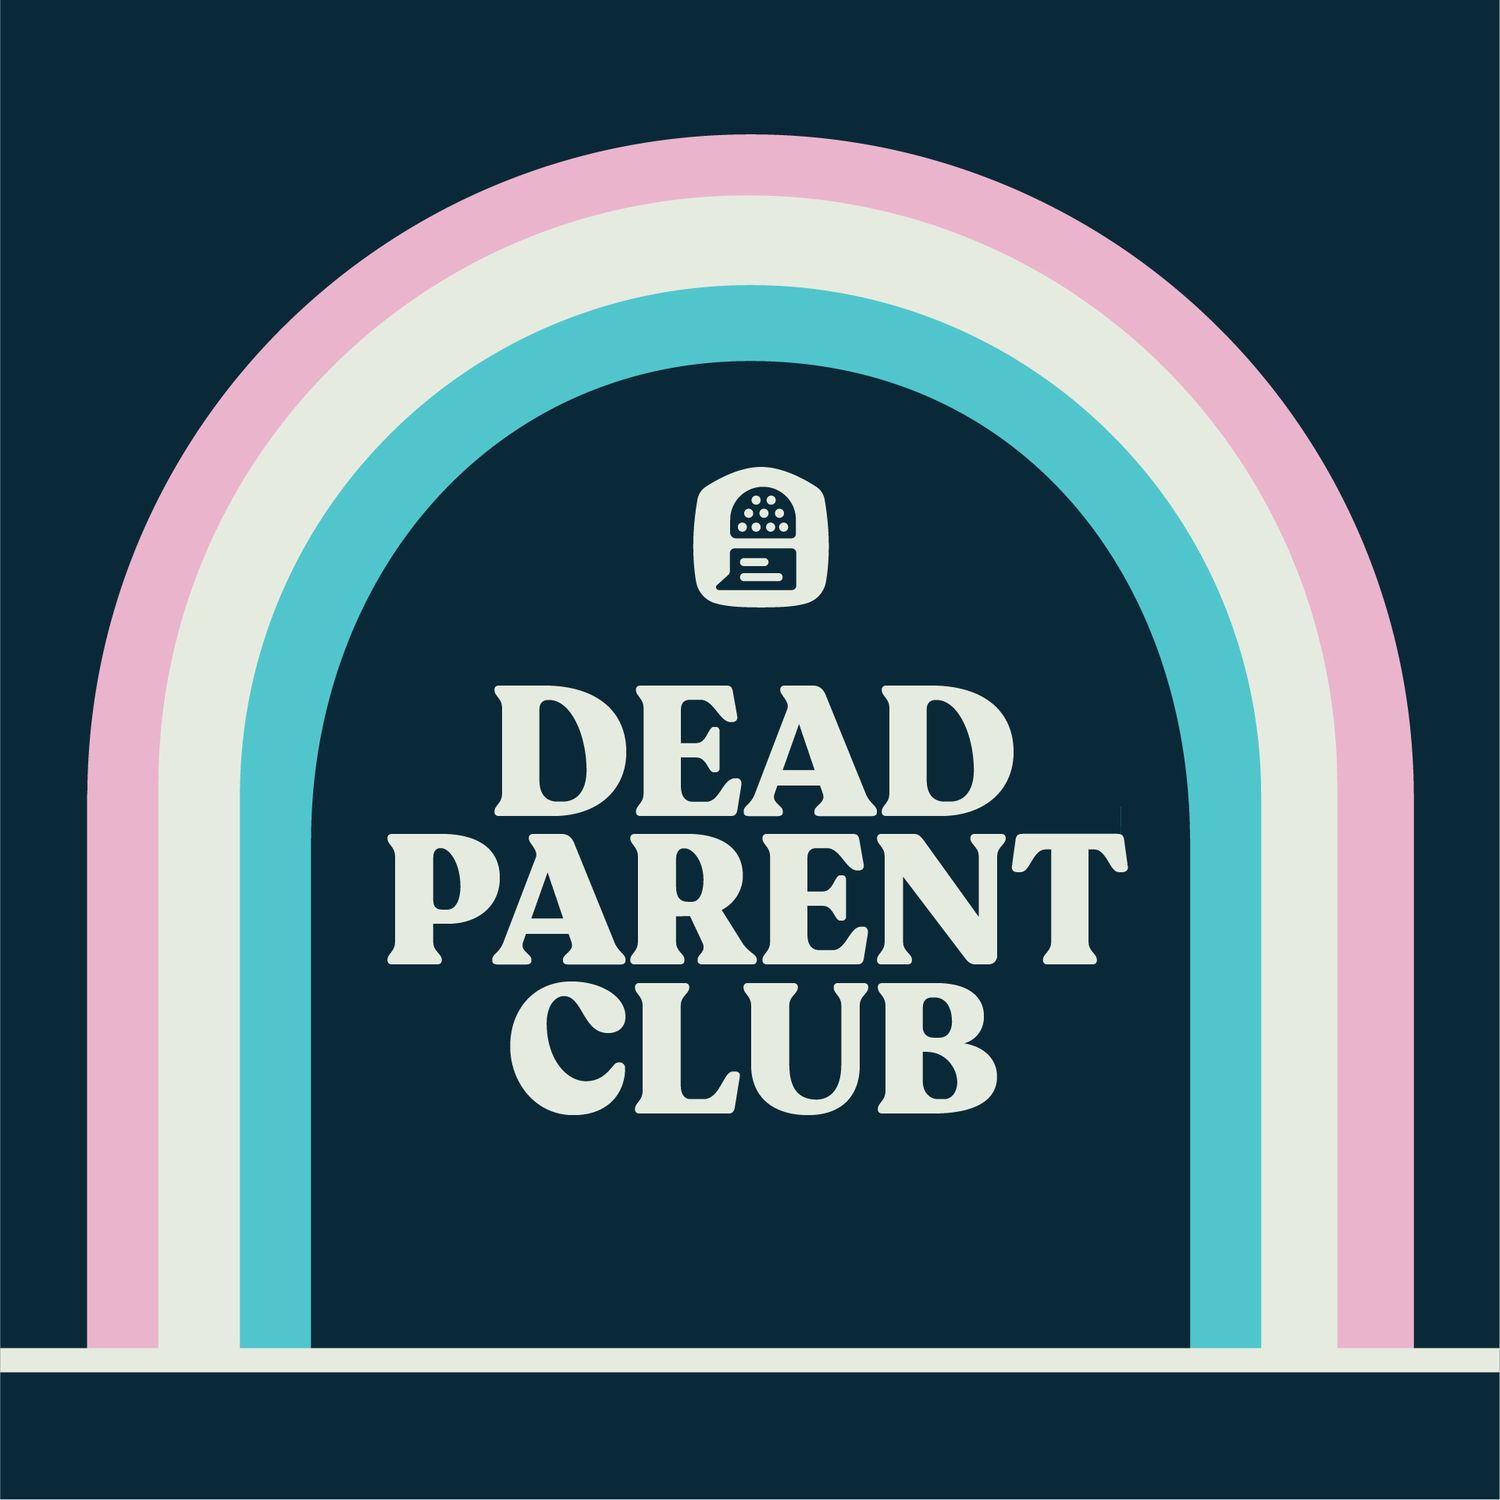 The Dead Parent Club